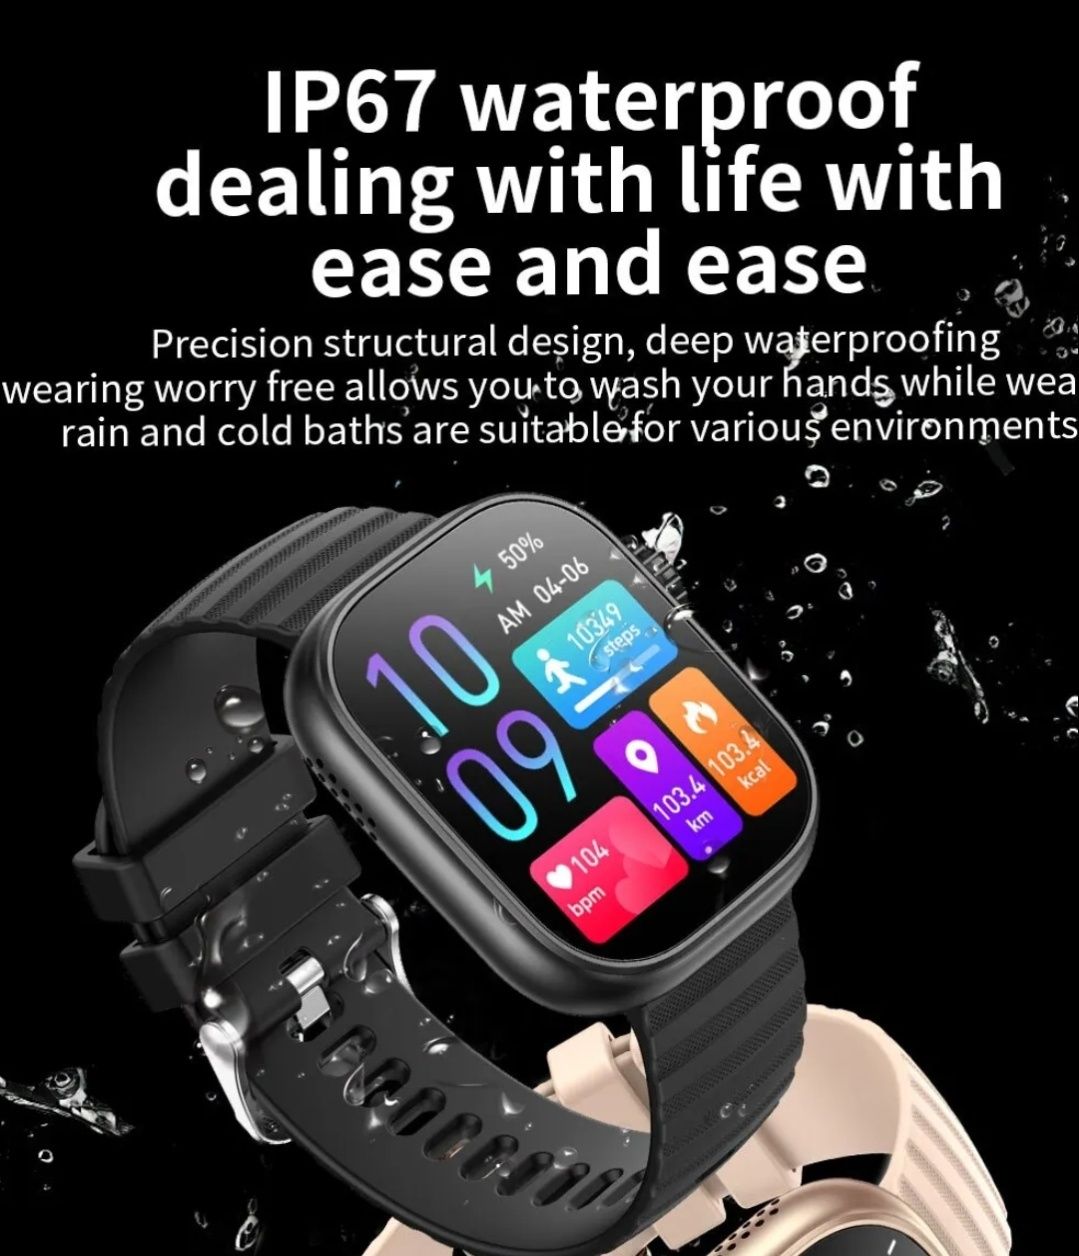 Smart watch SENBONO с функции:: Обаждания ,Спорт Режими , Голям Екран